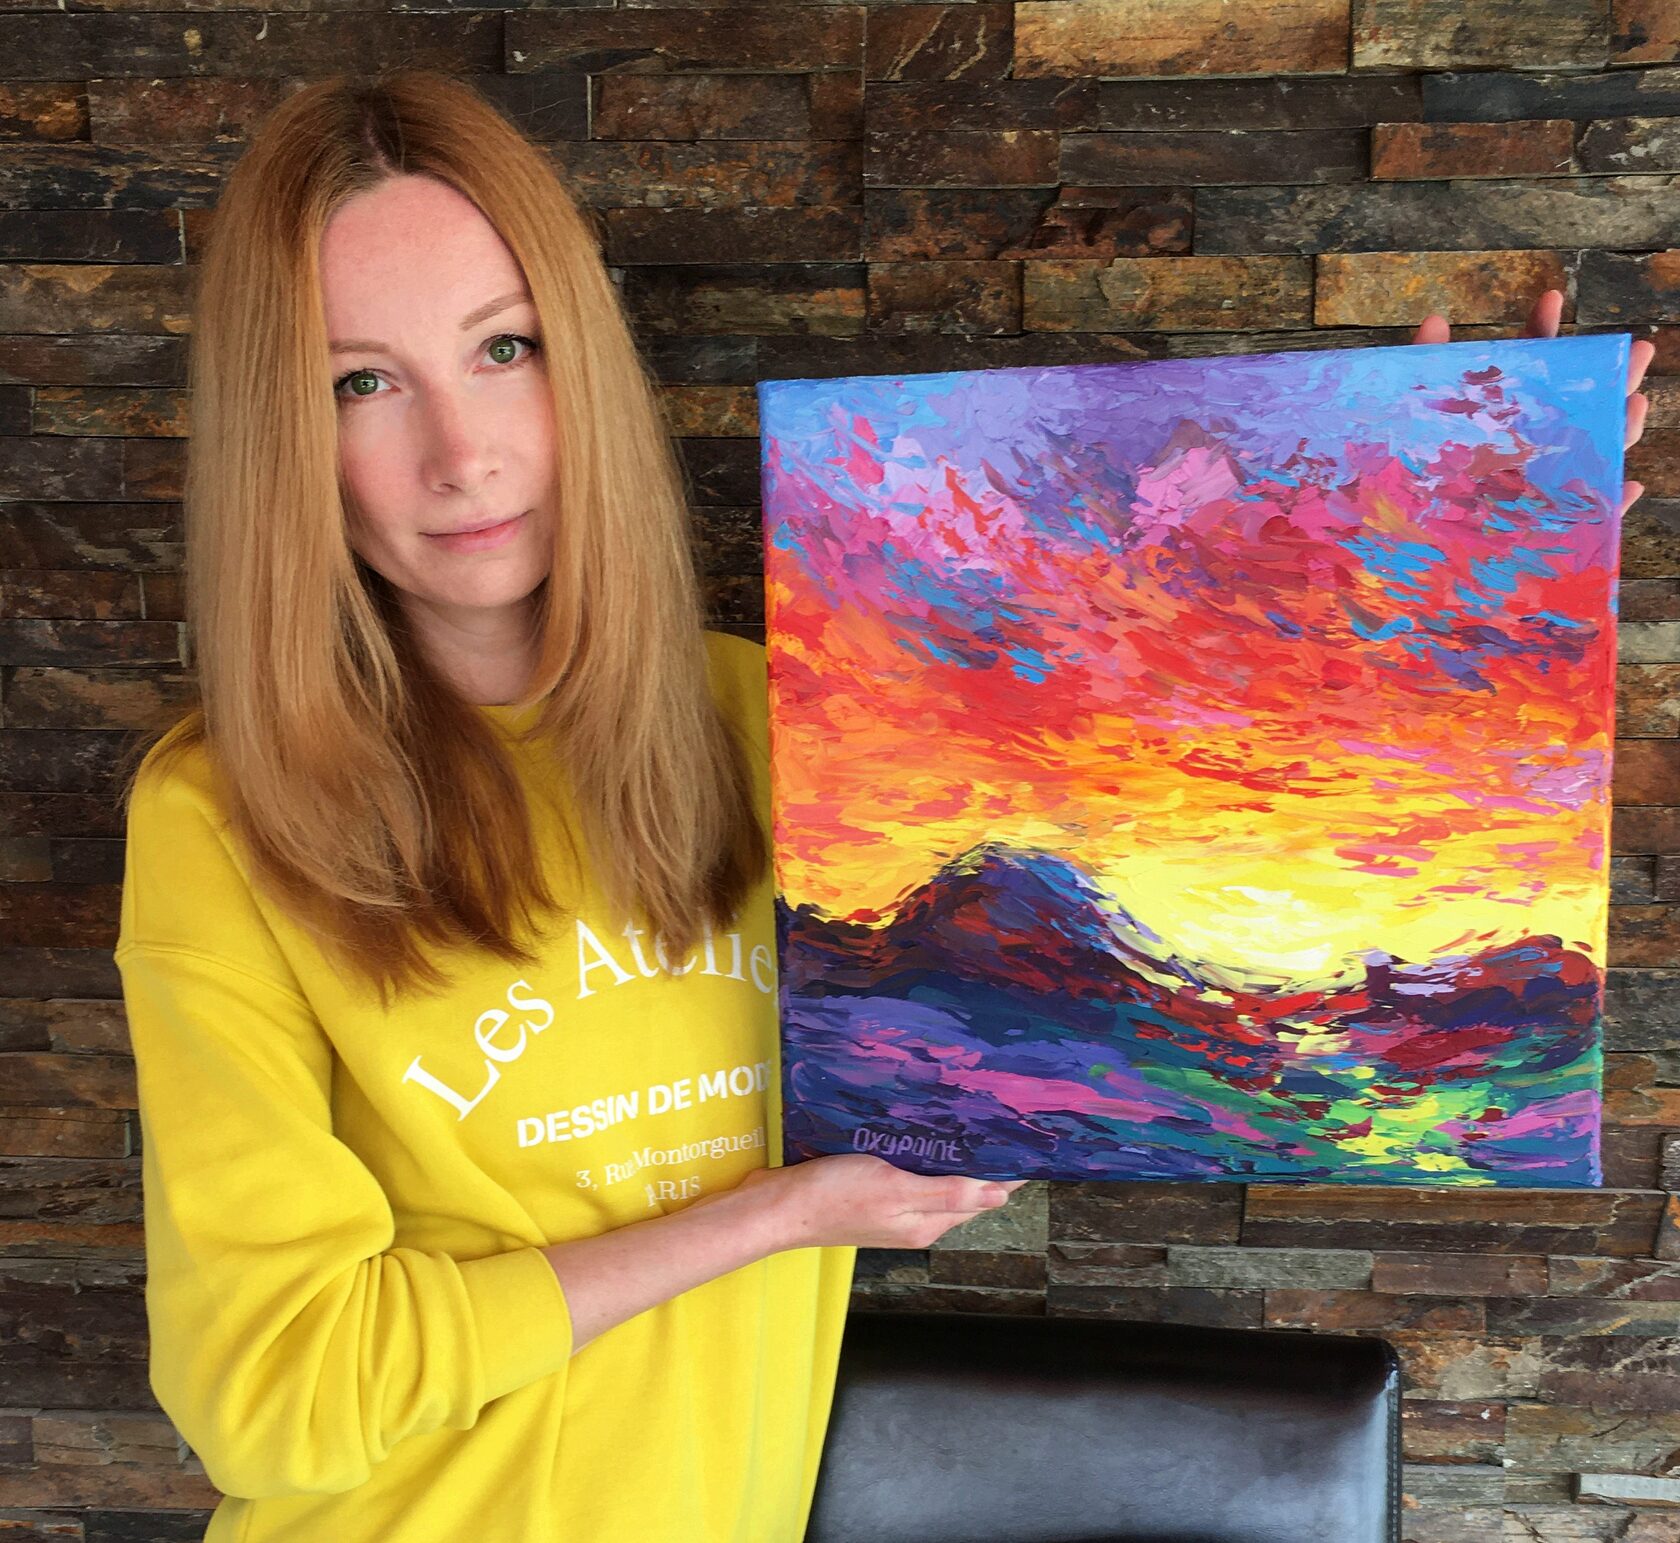 Sunset landscape oil painting